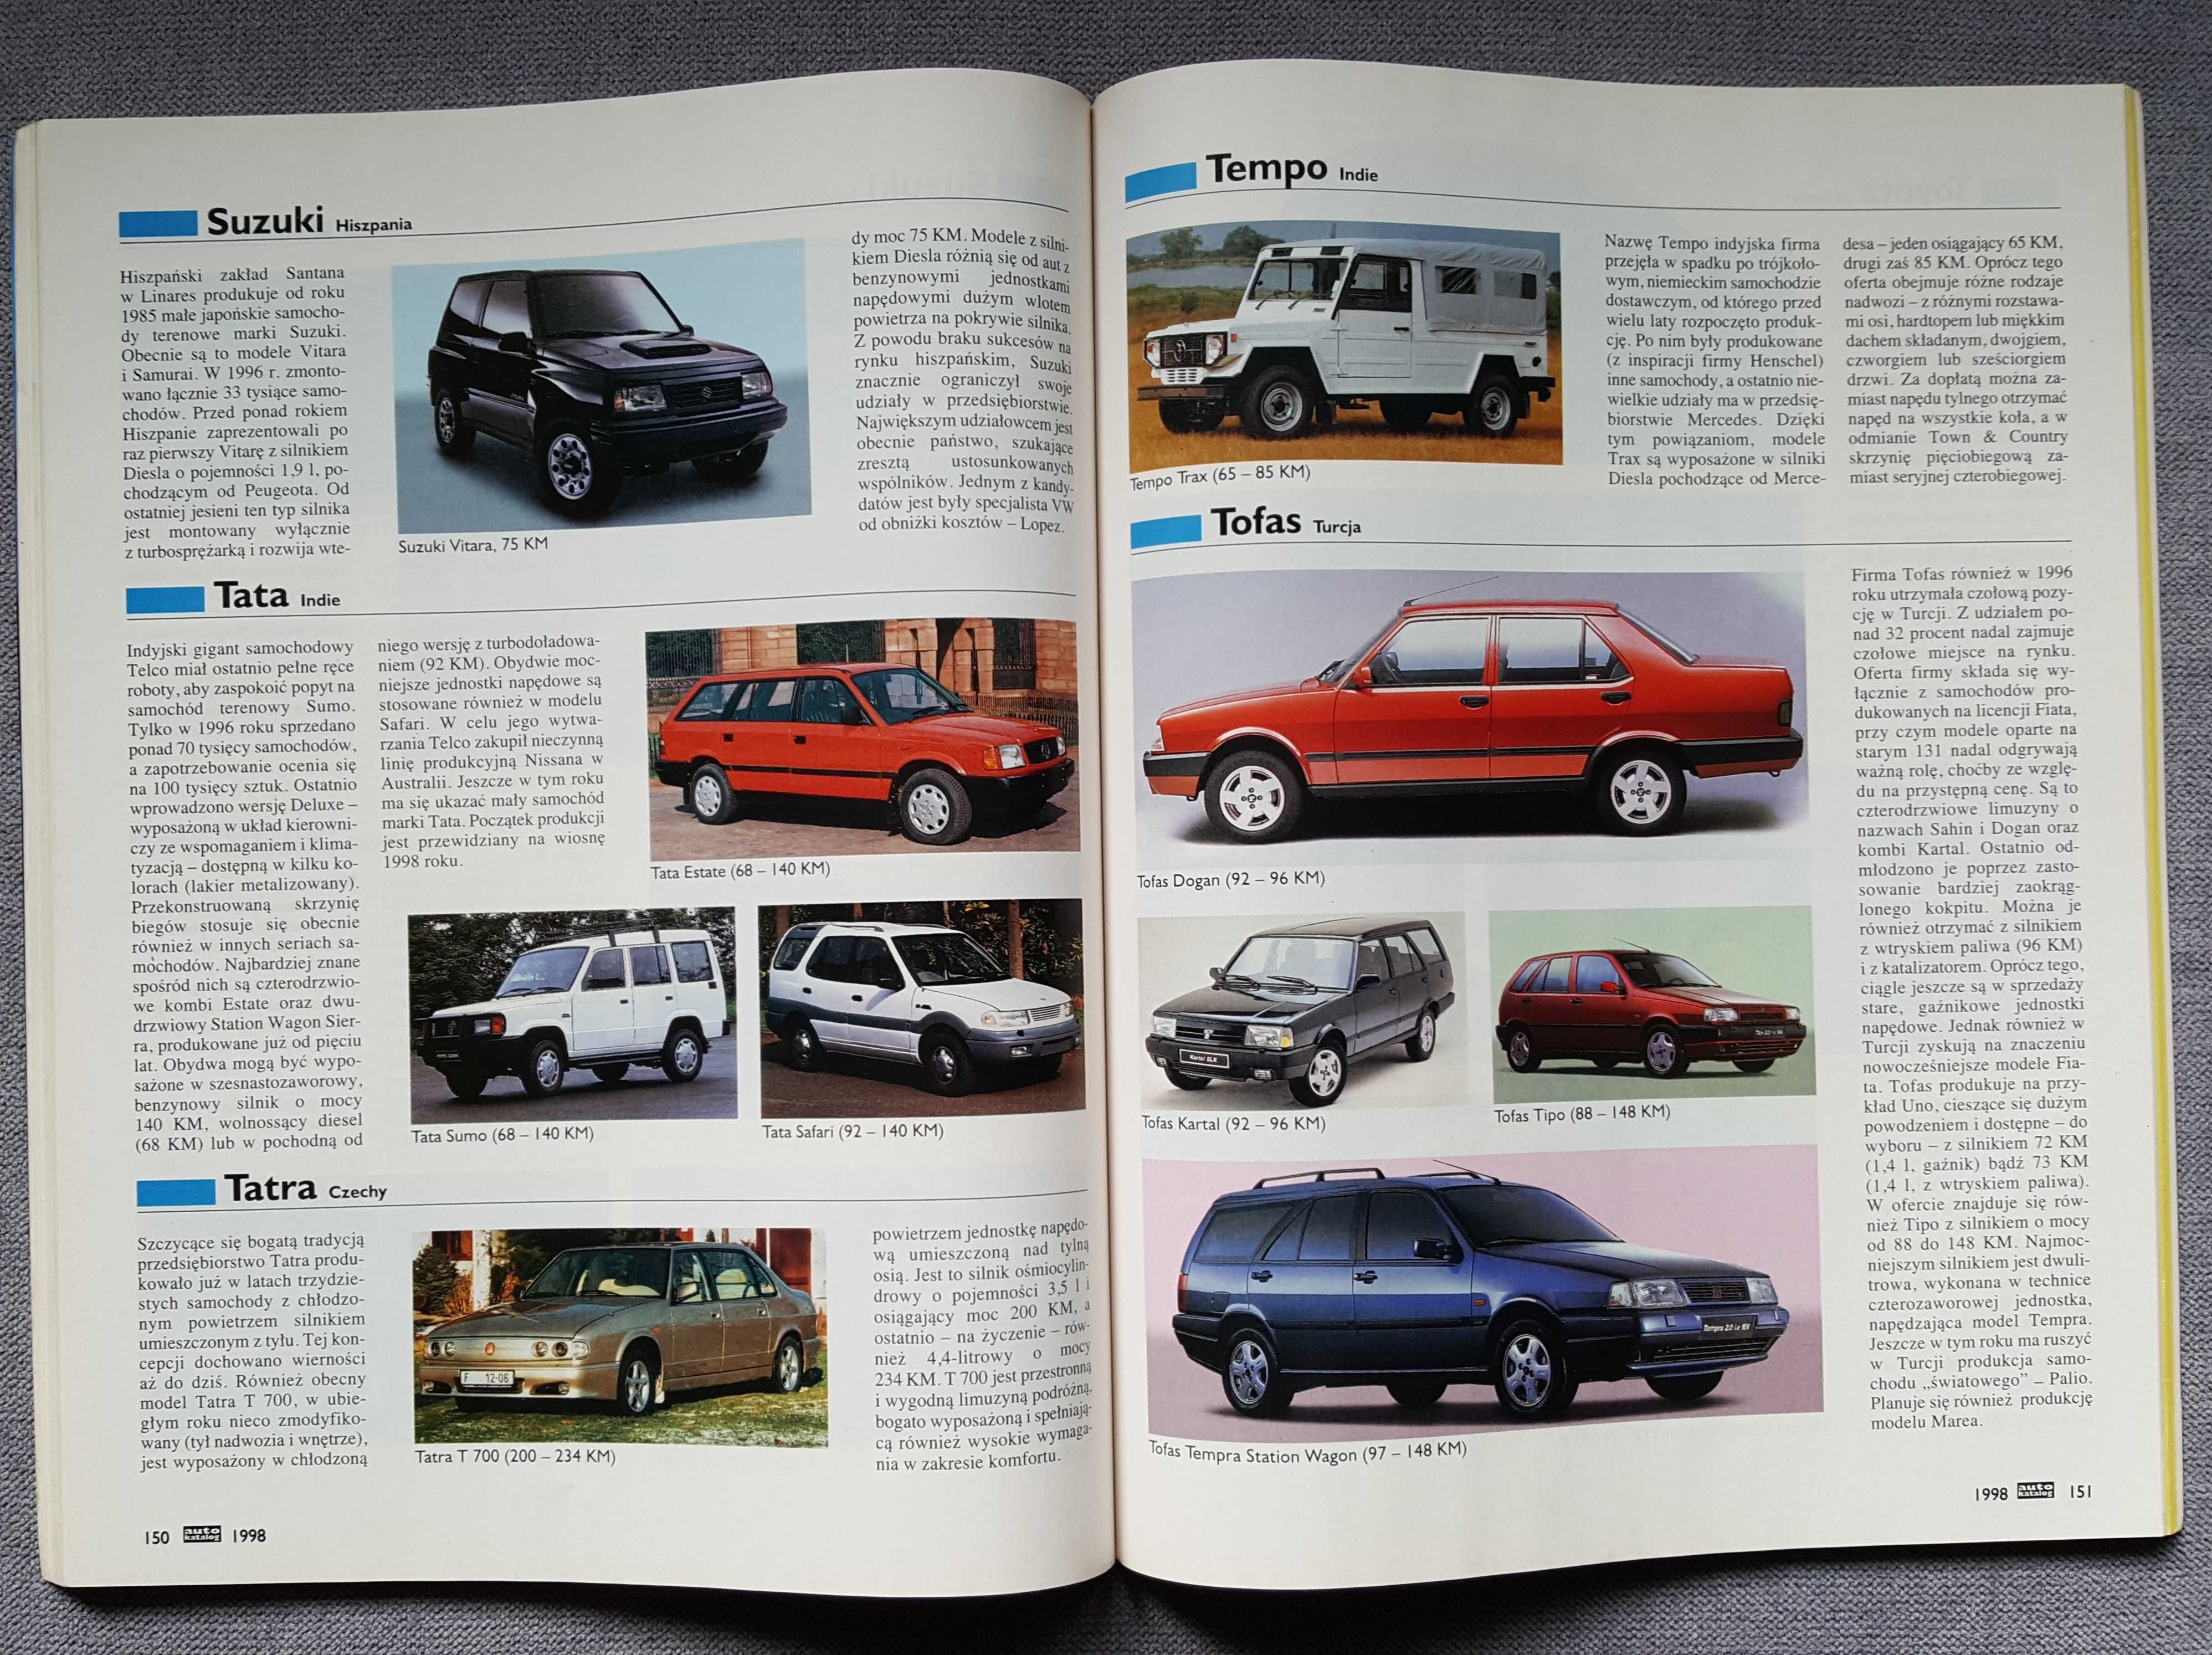 Nowy Auto Katalog 1998 - Samochody Świata